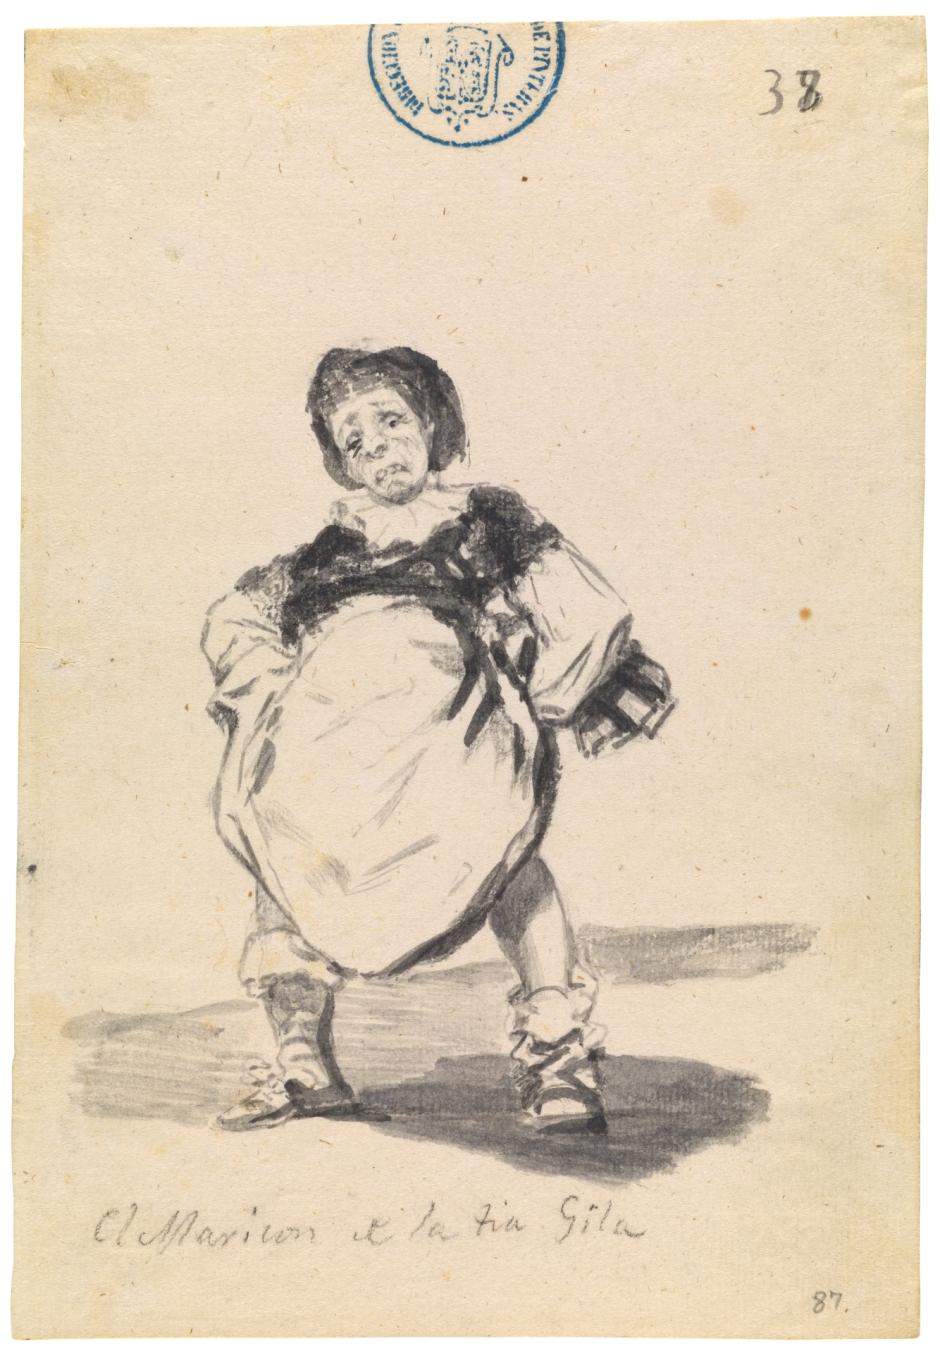 'El maricón de la tía Gila', de Goya